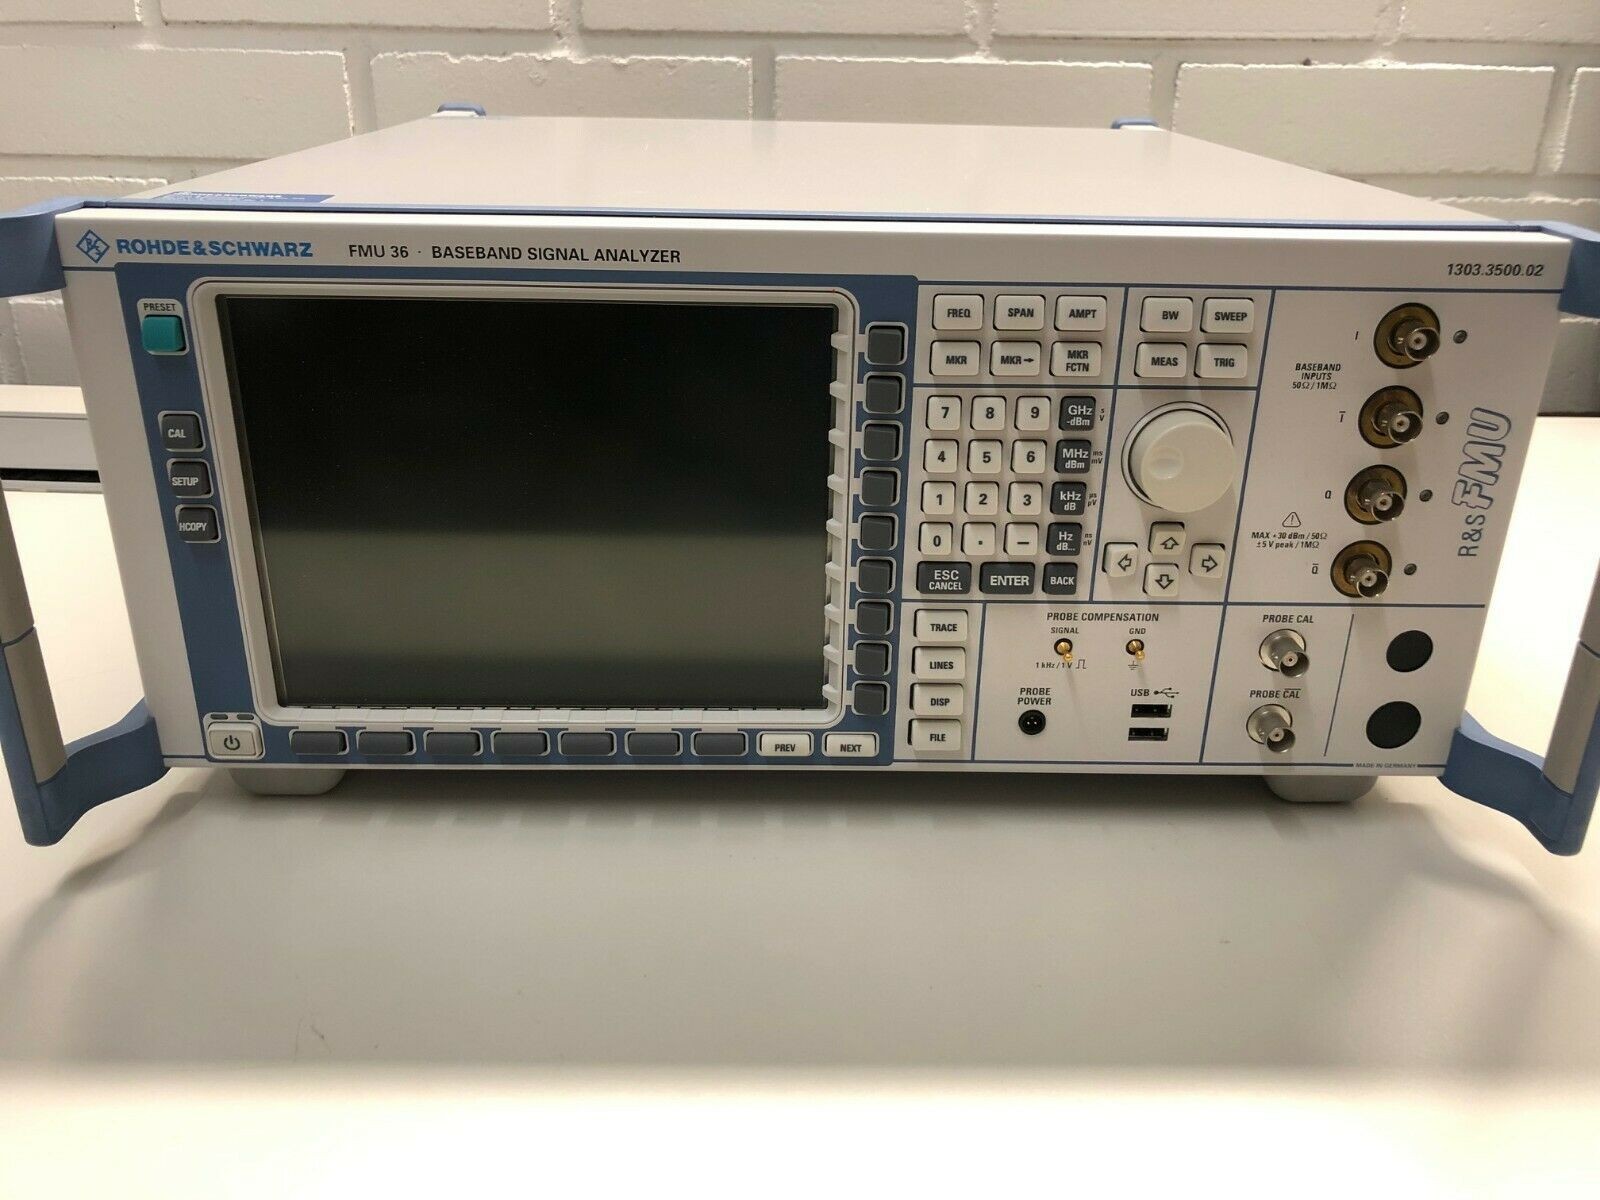 回收 罗德与施瓦茨FMU36 基带频谱分析仪